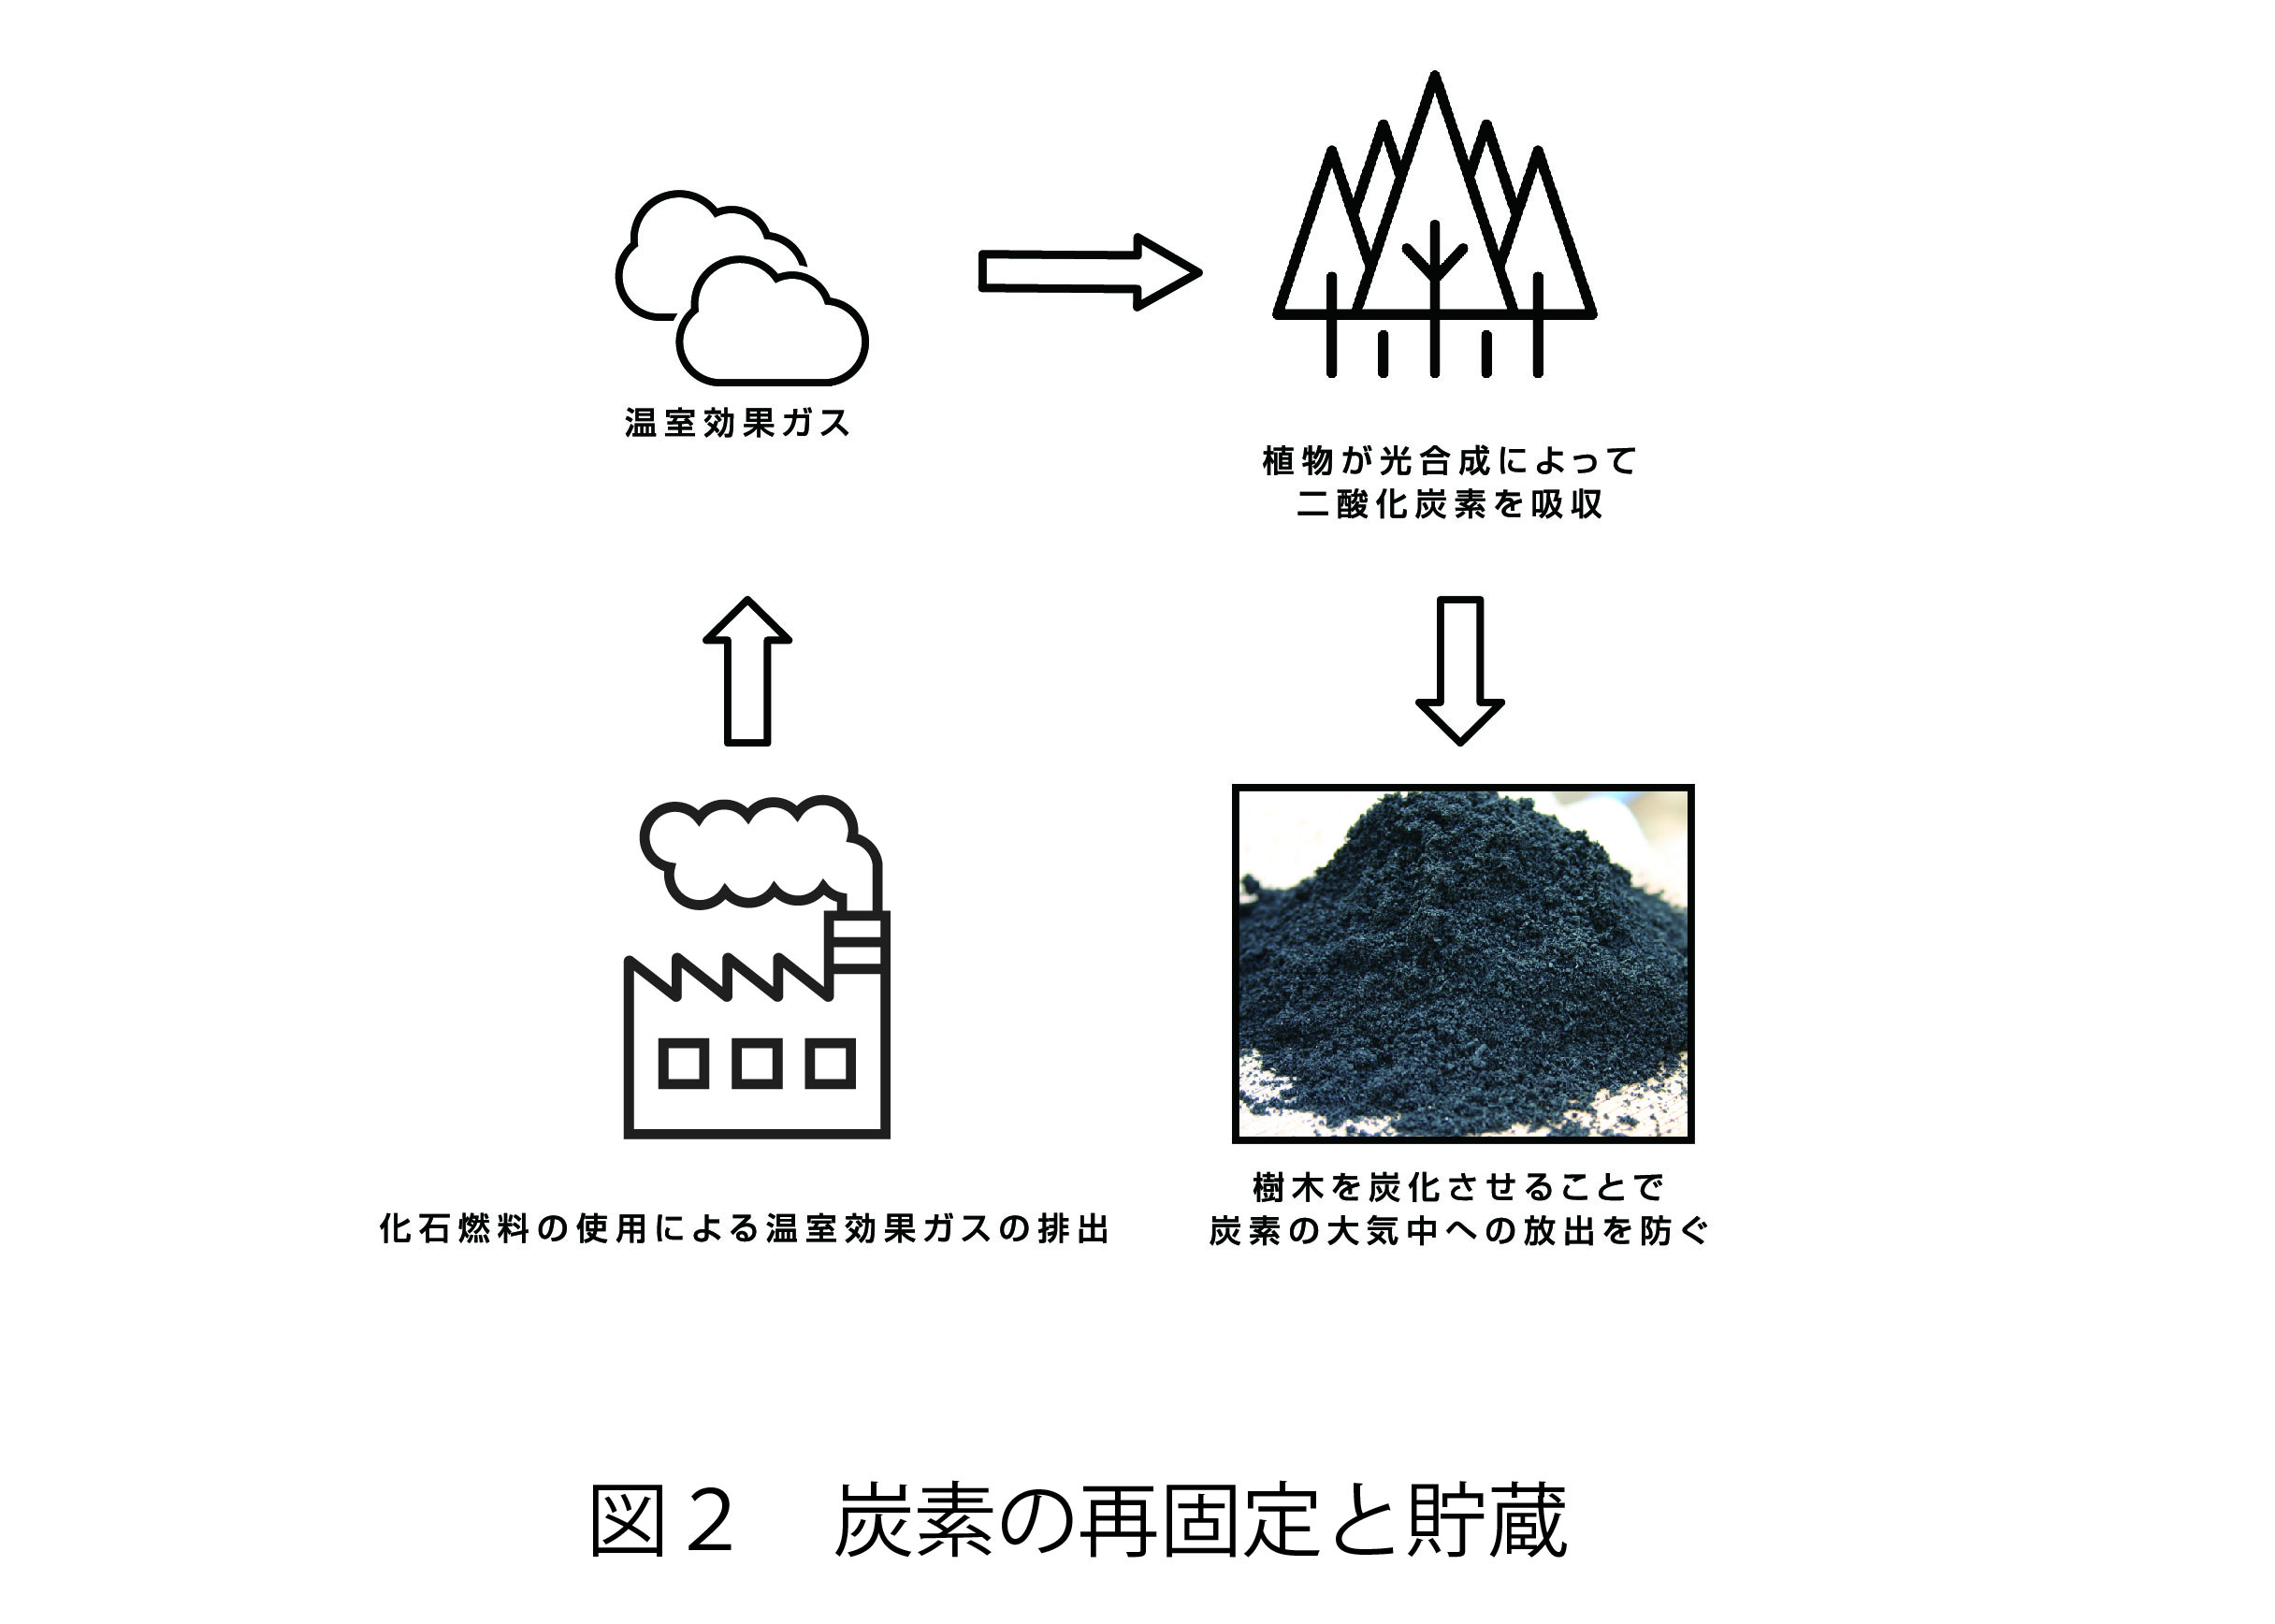 図2. 炭素の再固定と貯蔵